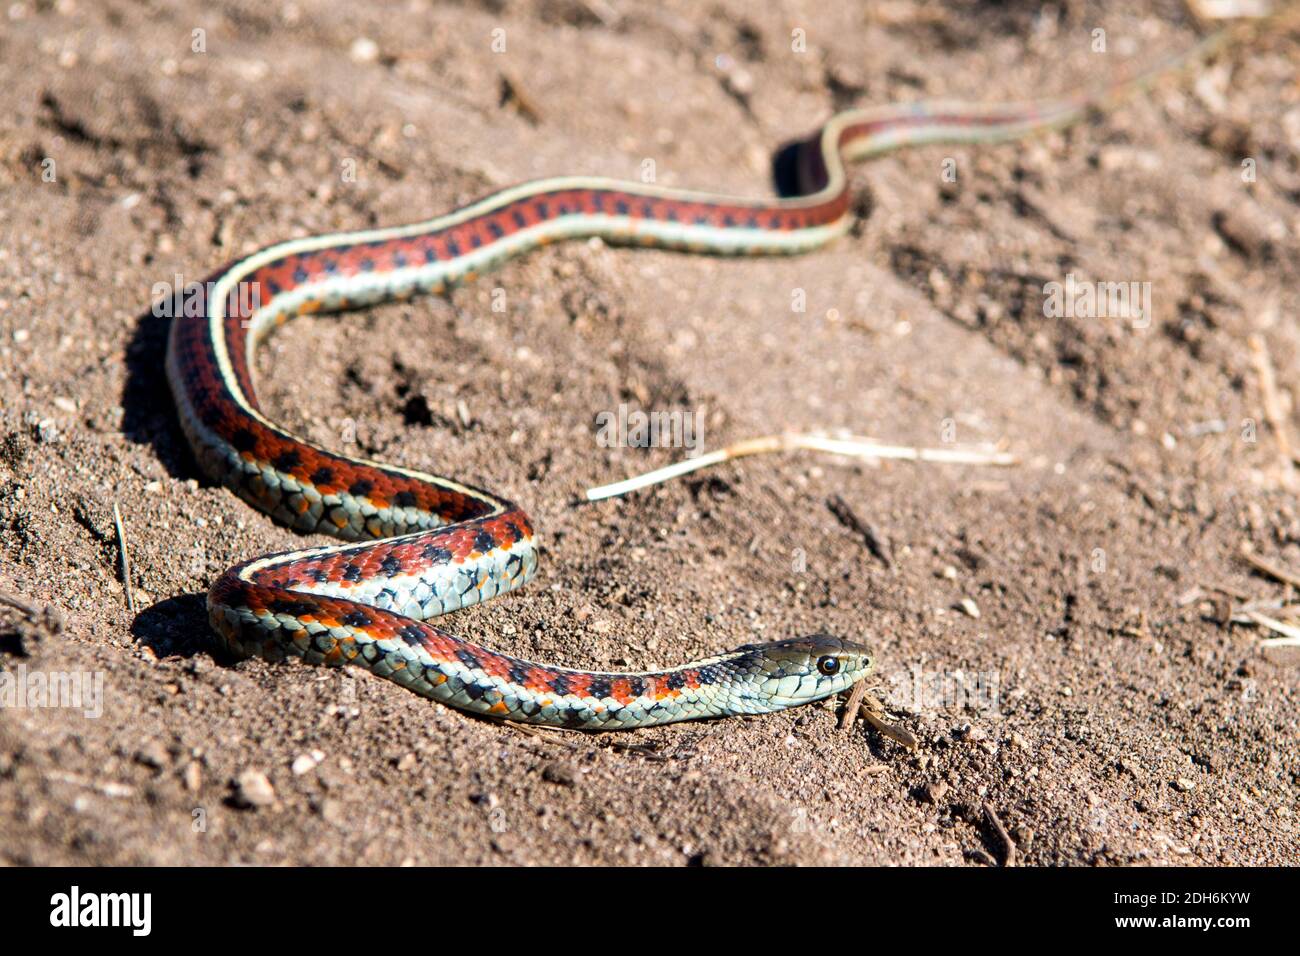 California serpiente de ala roja en la arena encontrada en el norte de California Costa Foto de stock